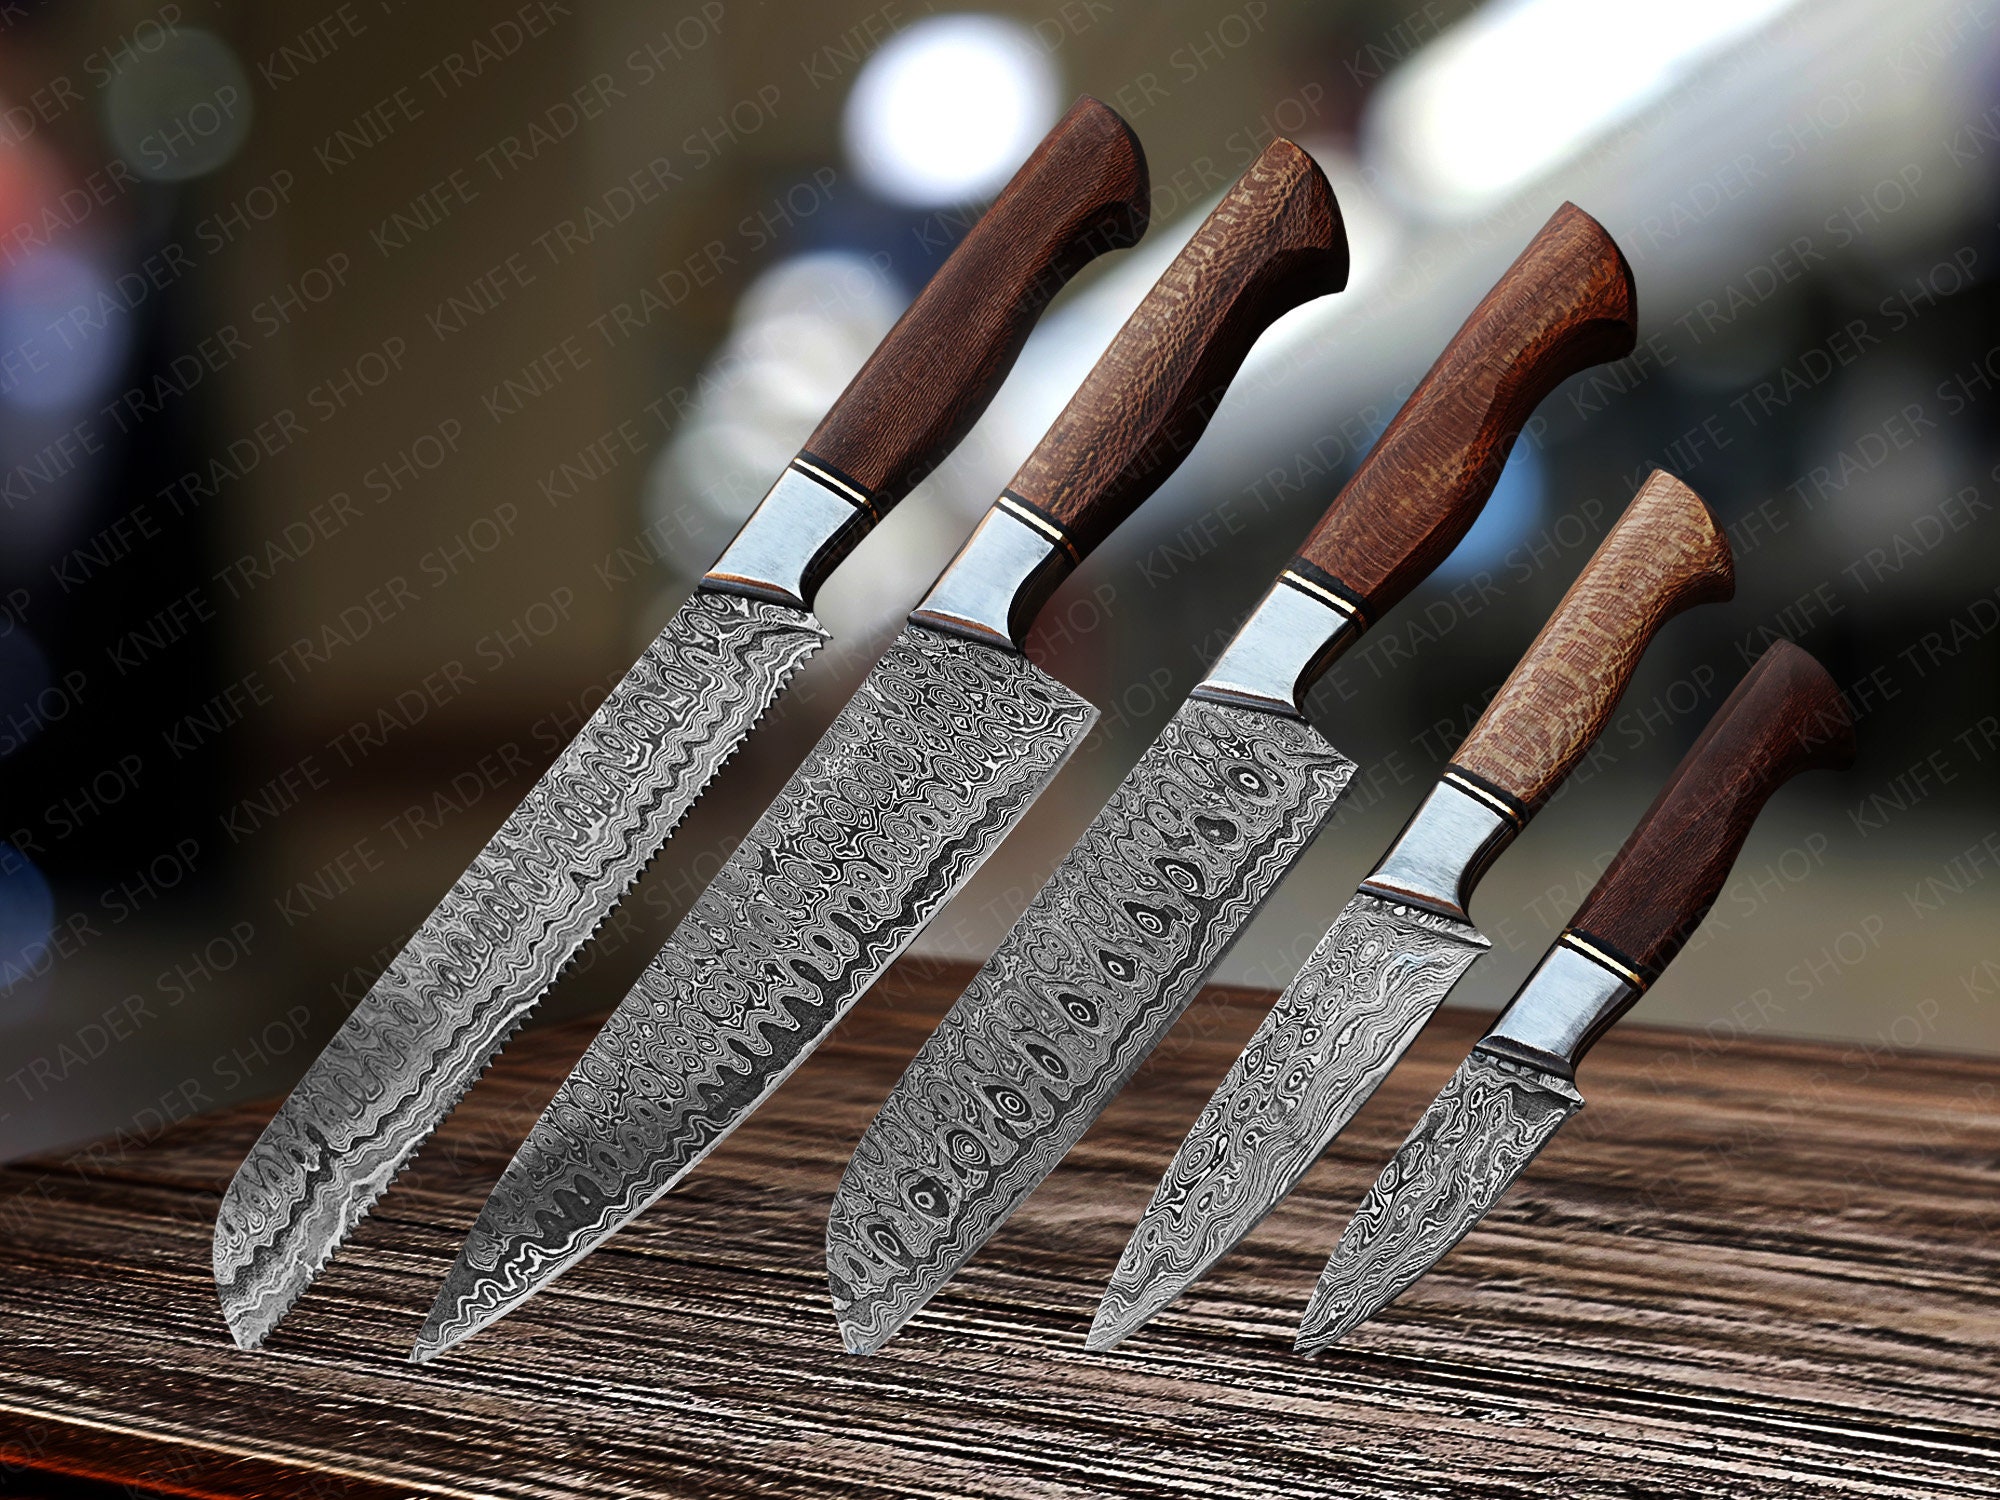 Måne Hates ledelse Ultimate Chef Knife Set Damascus Steel Blades Handmade - Etsy